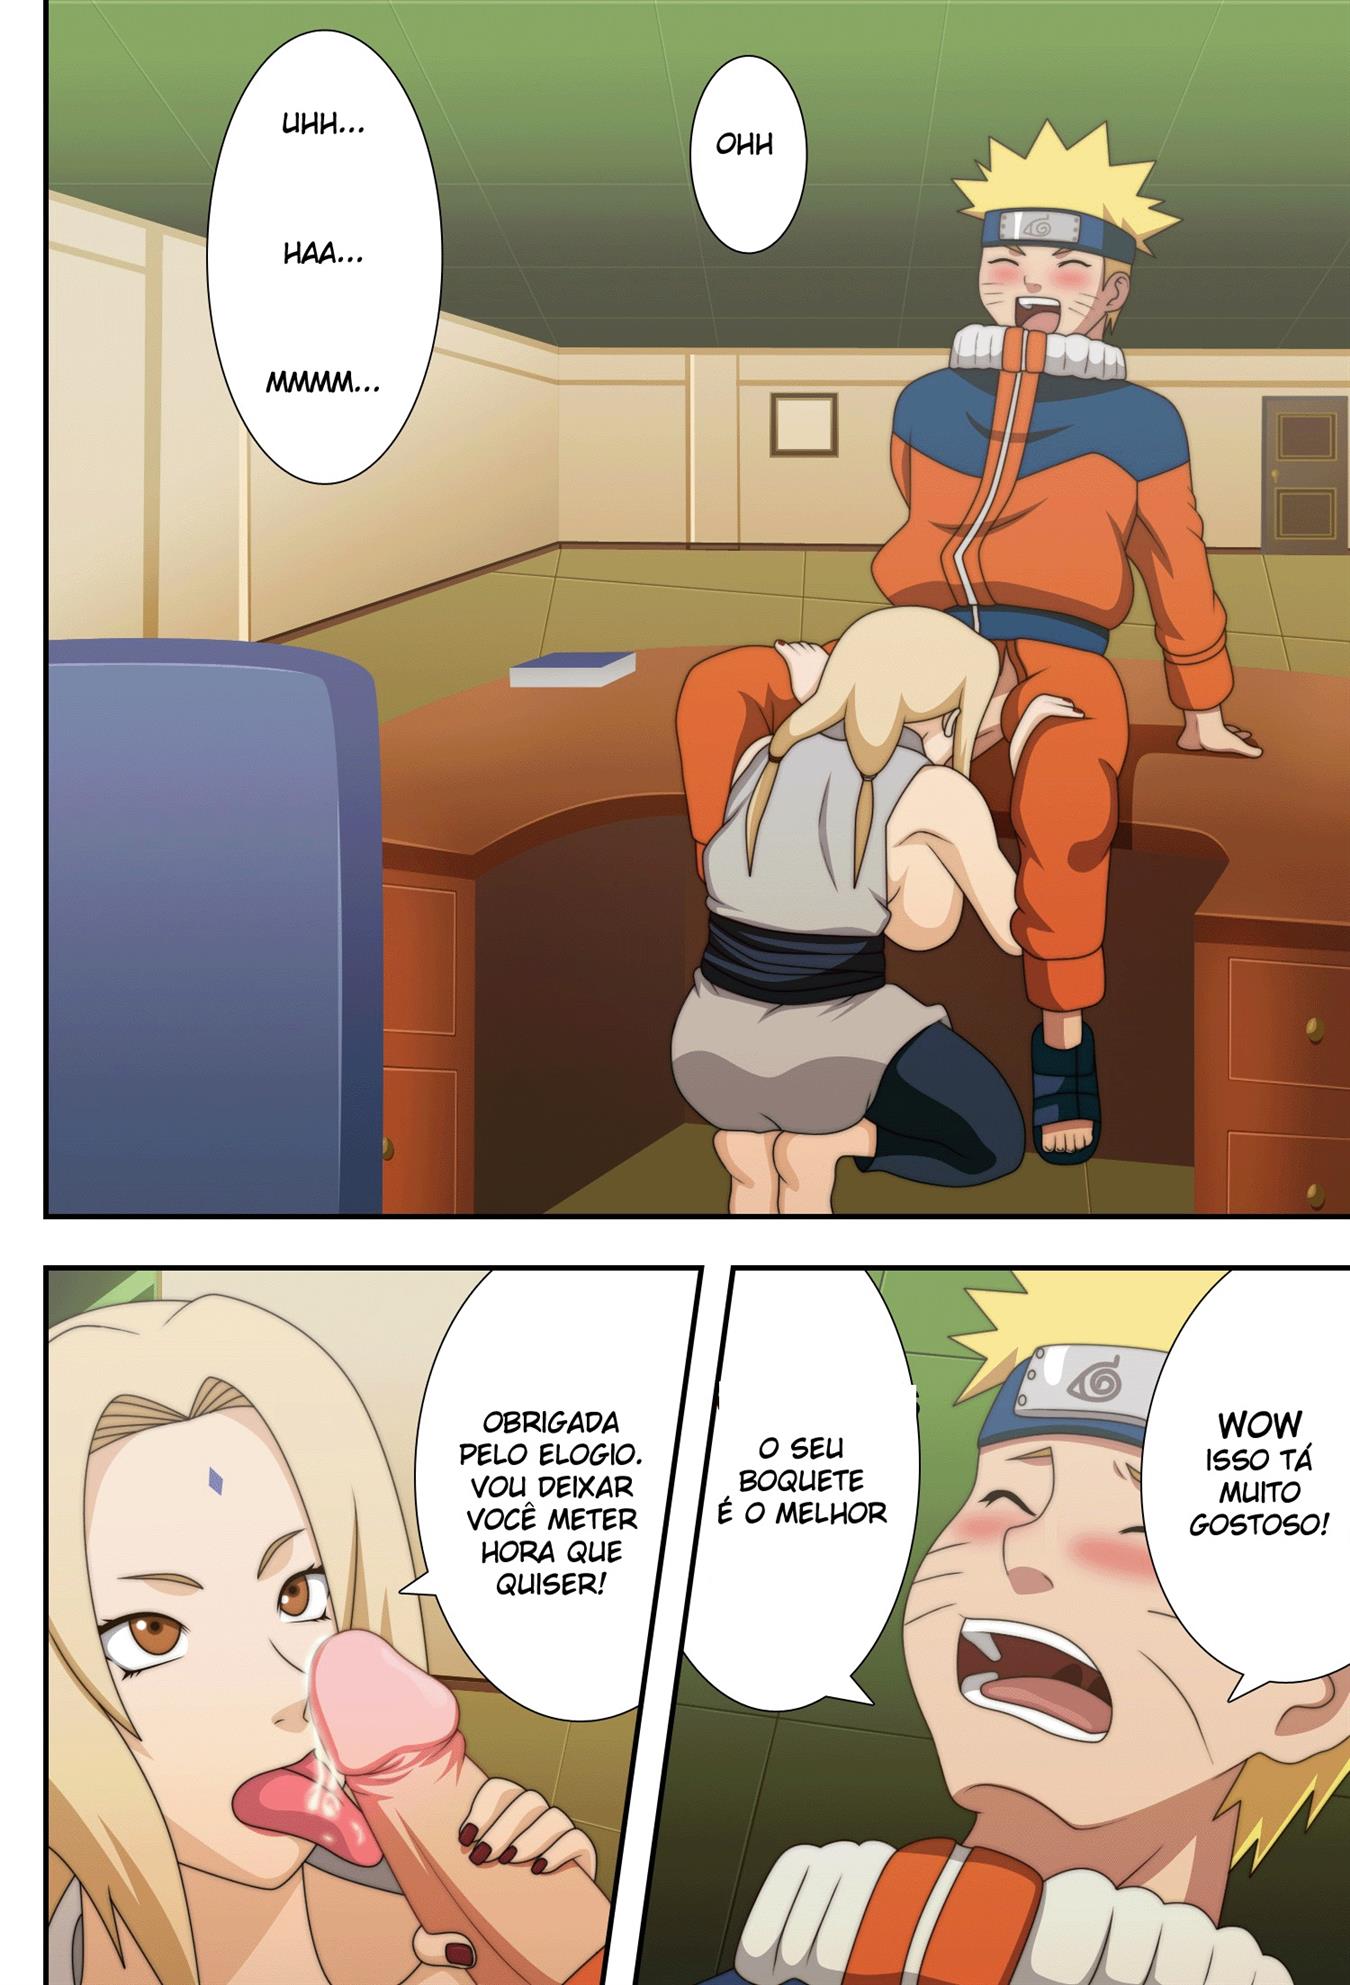 Naruto possuindo sua mestra Tsunade